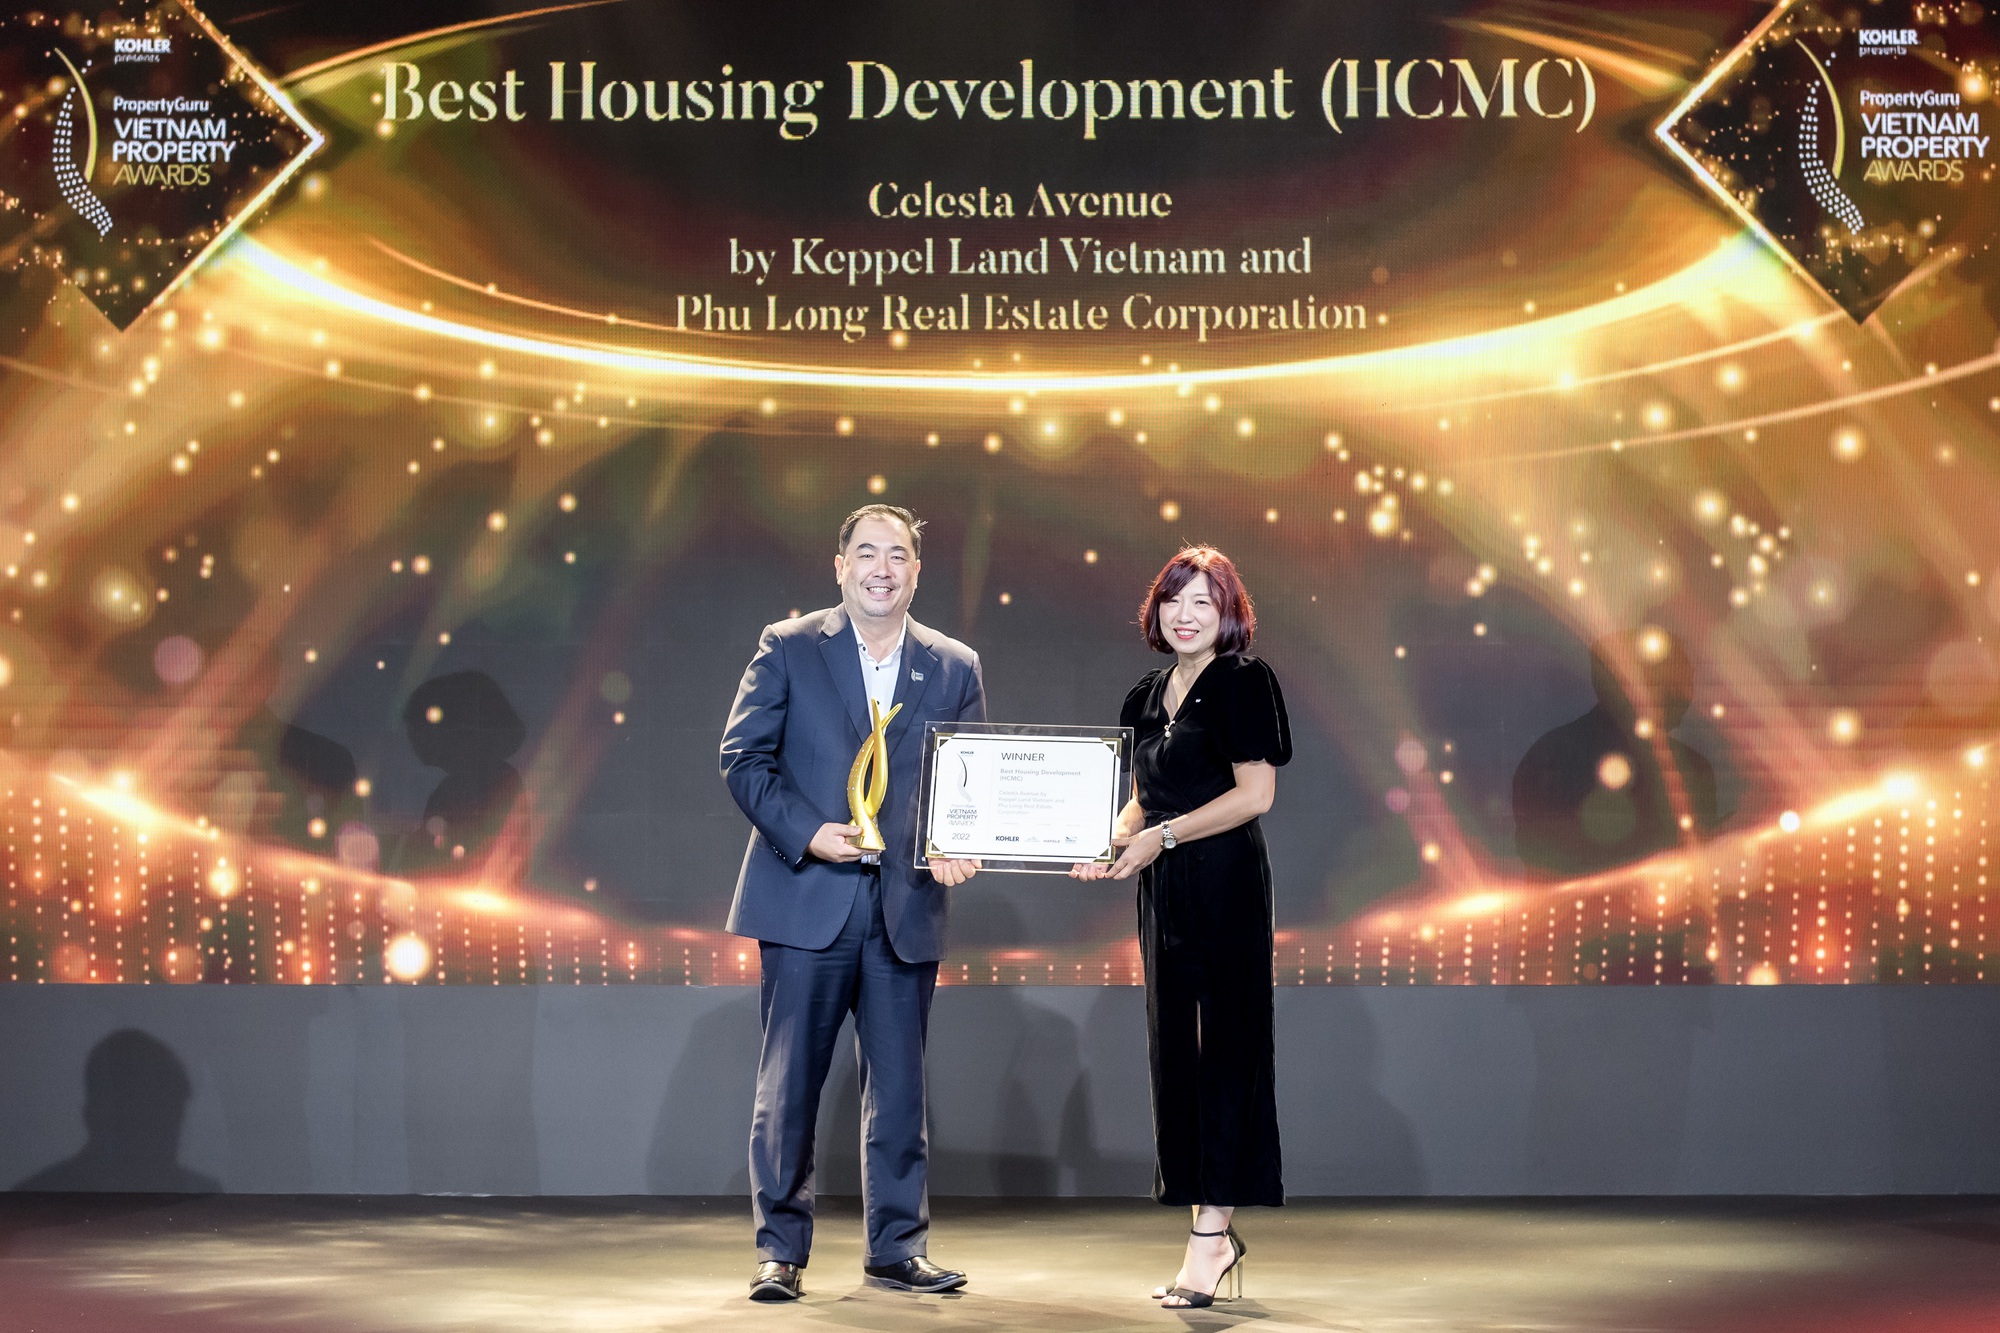 Chủ tịch Keppel Land Việt Nam nhận giải Nhân vật bất động sản của năm - Ảnh 2.